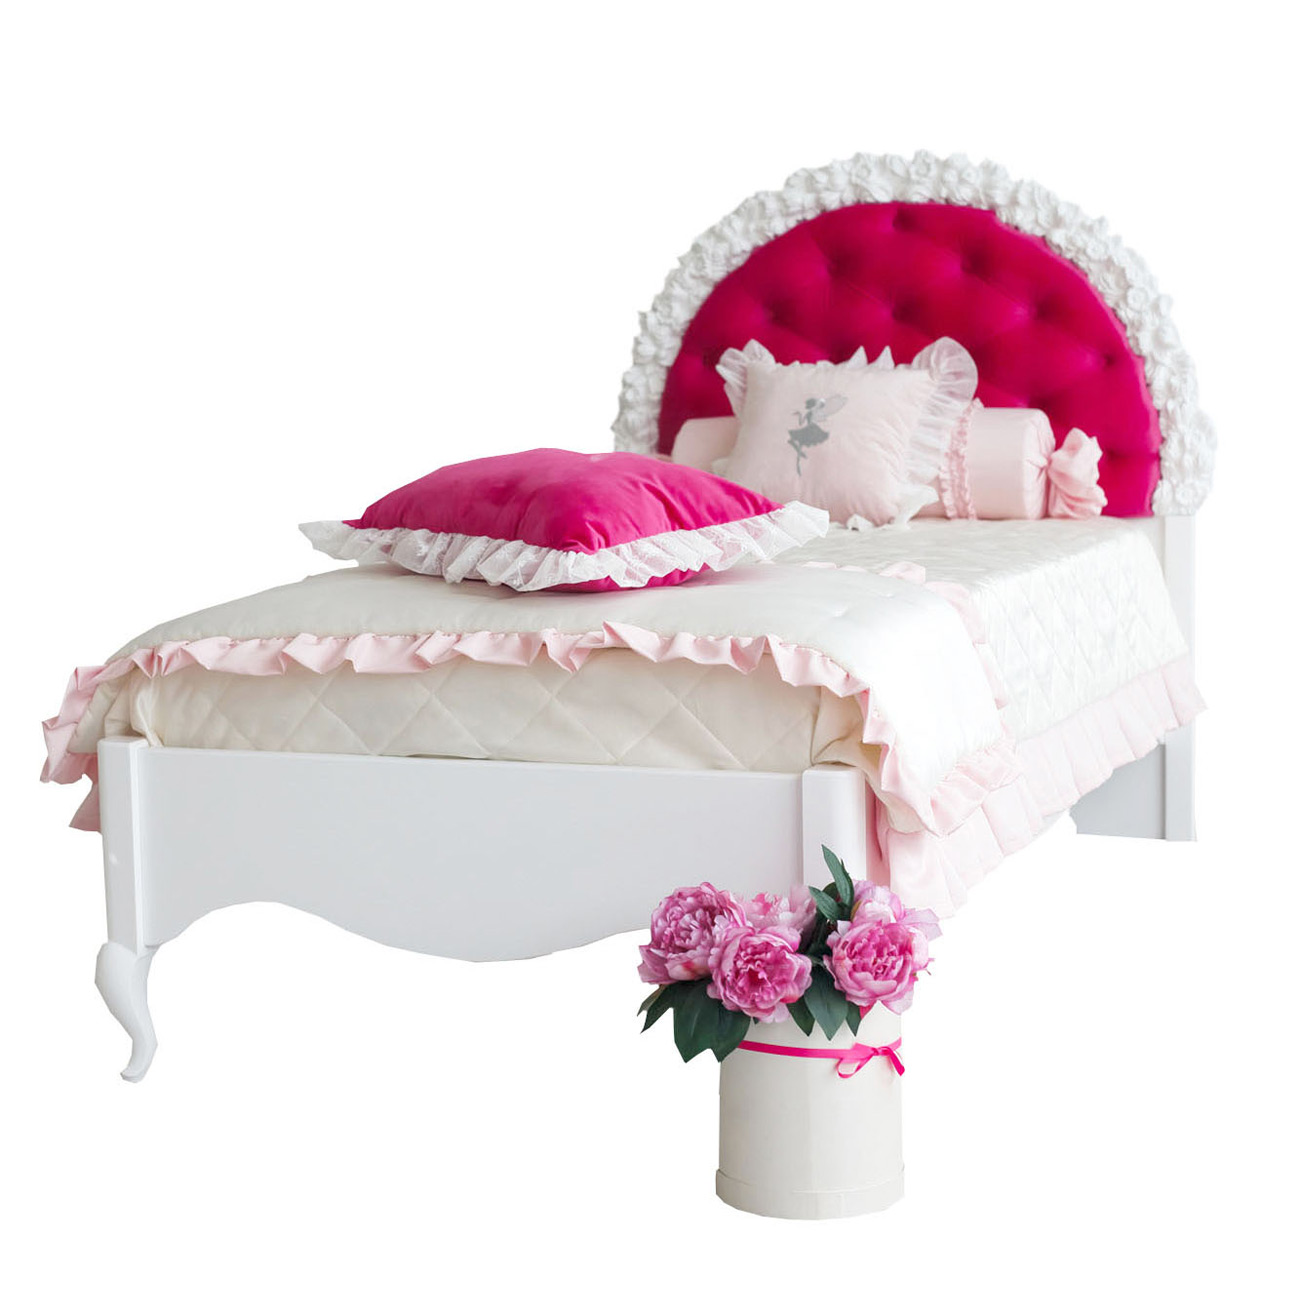 Julieta baby. Angelic Room детская мебель. Детская кровать Angelic Room. Круглая кровать для девочки.